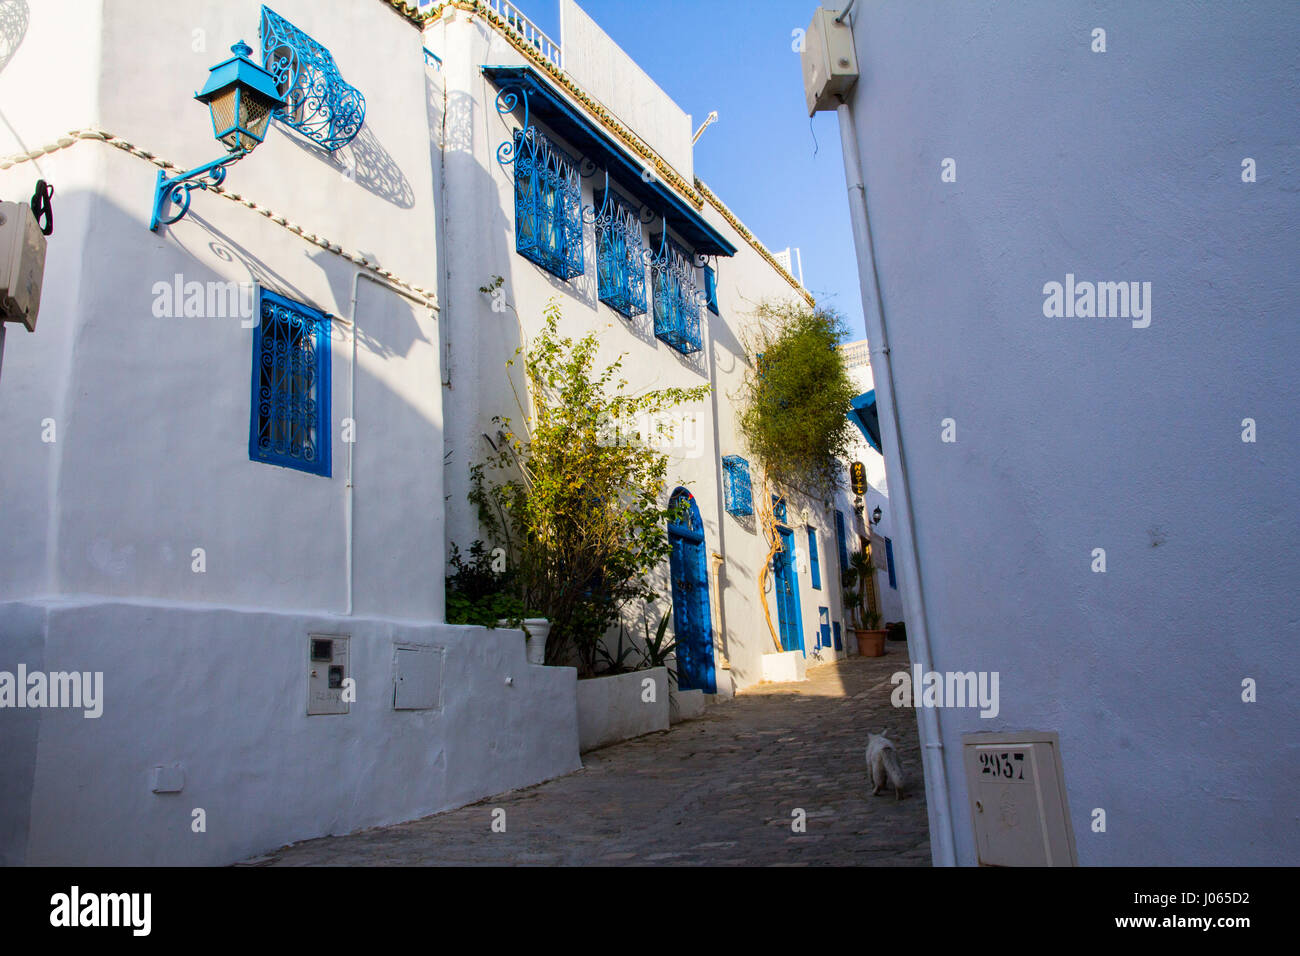 Tout blanc avec garniture bleue, les Maures (ou peut-être d'inspiration grecque) une colline de Sidi Bou Saïd est une colonie d'artistes et pas seulement hanter touristique populaire Banque D'Images